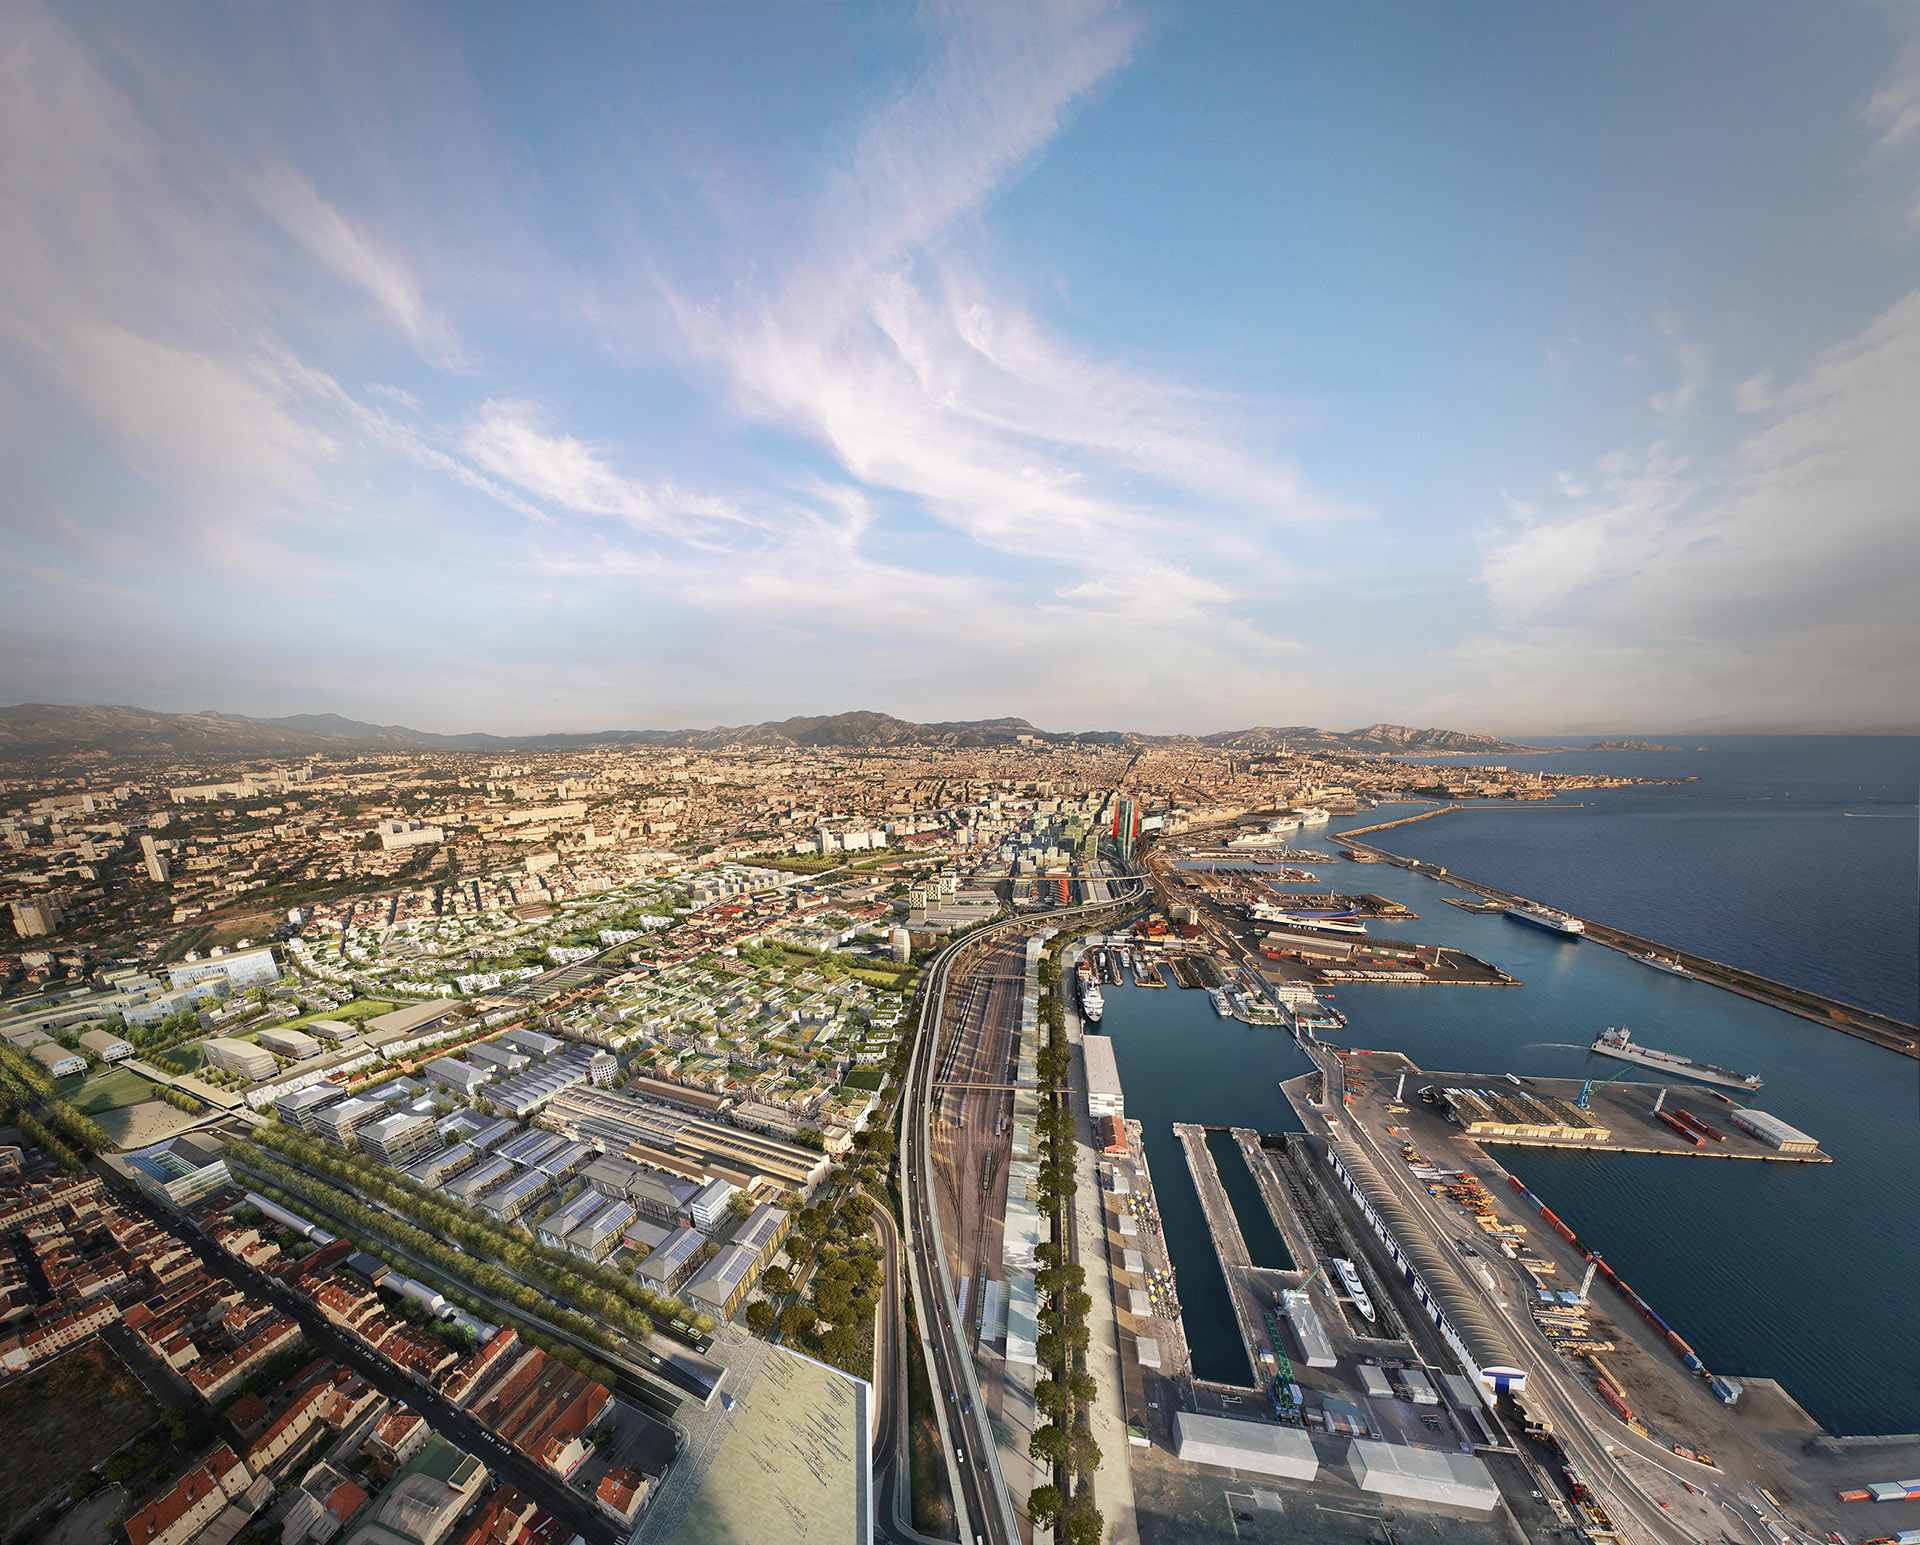 Image de communication - ANMA (Agence Nicolas Michel et Associés) - Architectes - Projet EUROMED2 à Marseille